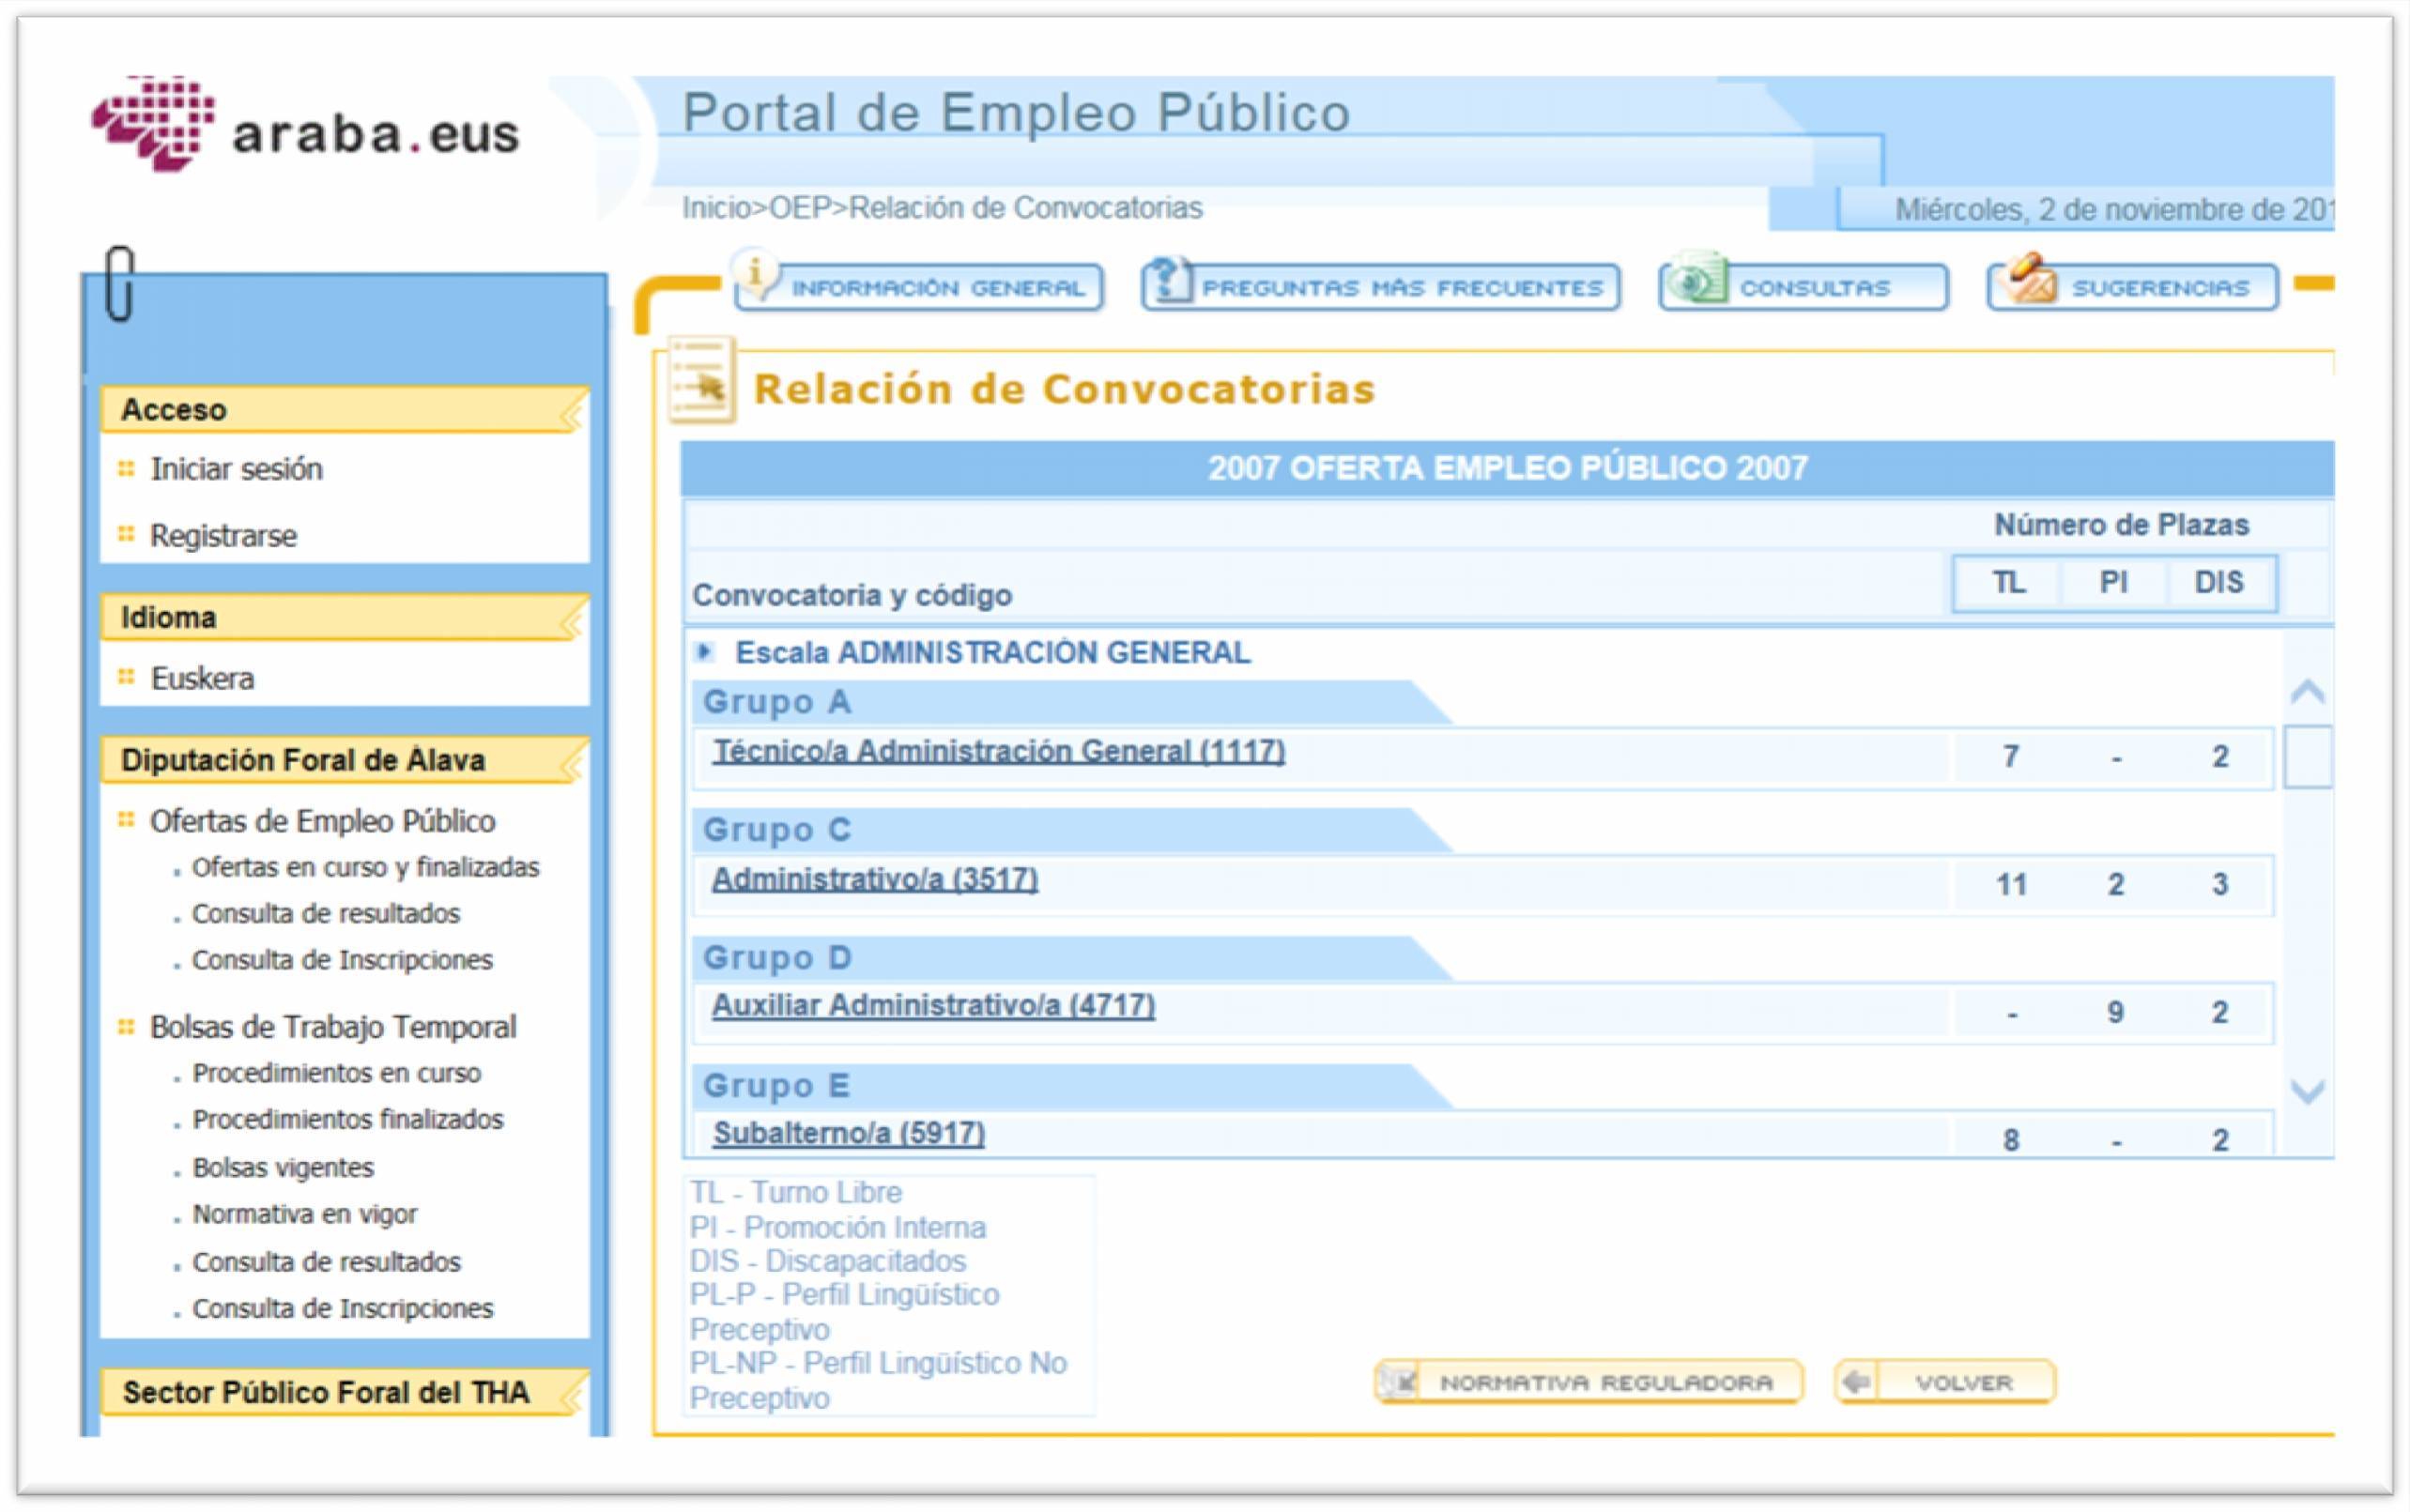 Una vez efectuado el registro se accede a la información contenida en el Portal de Empleo a través de